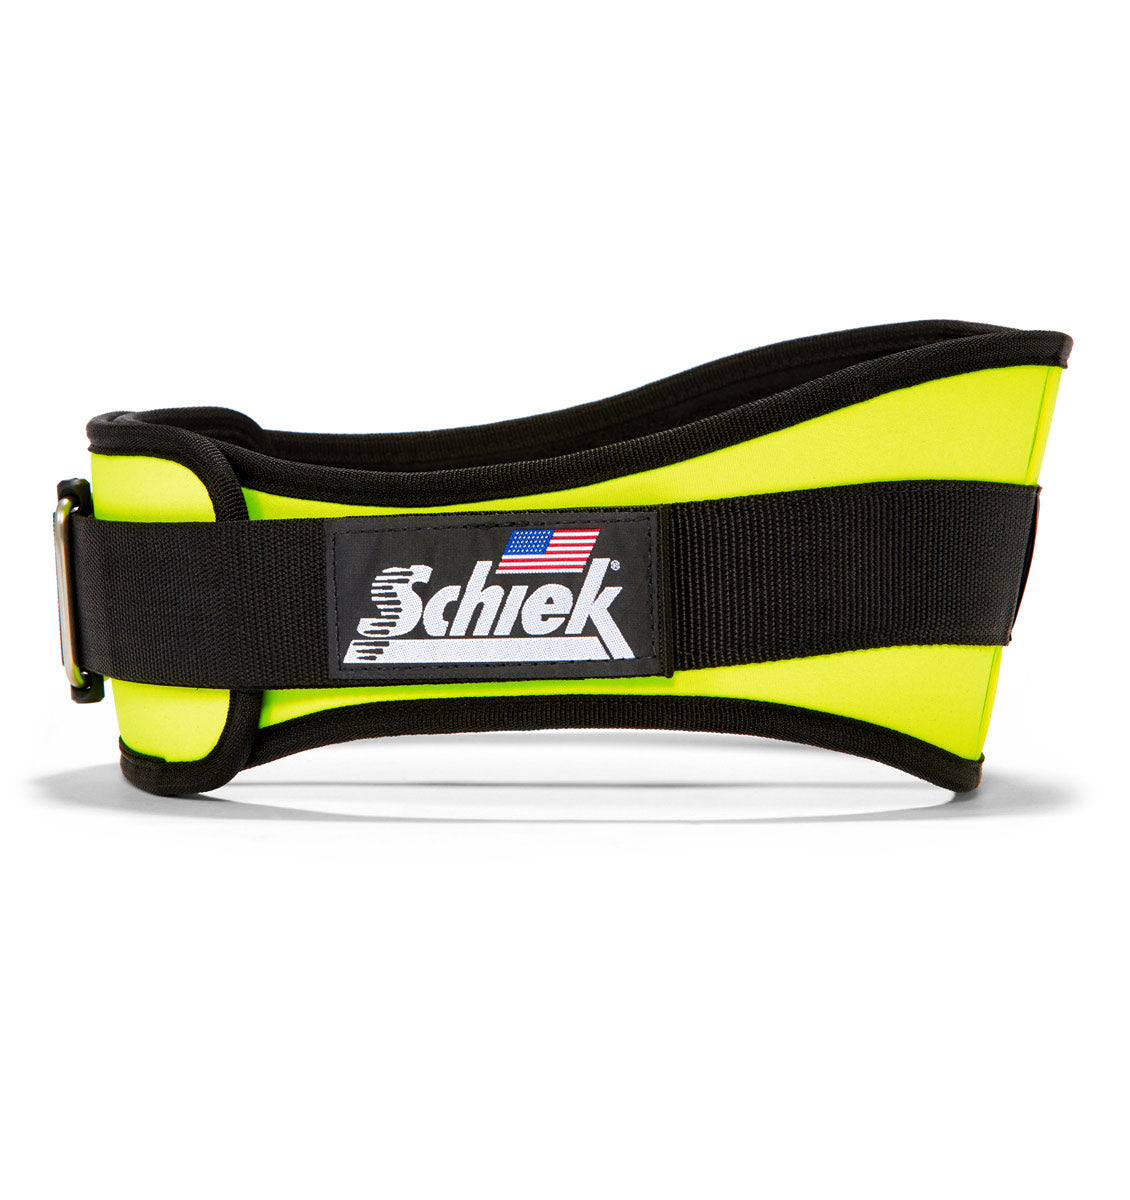 2006 Schiek Contour Weight Lifting Belt Neon Yellow Side